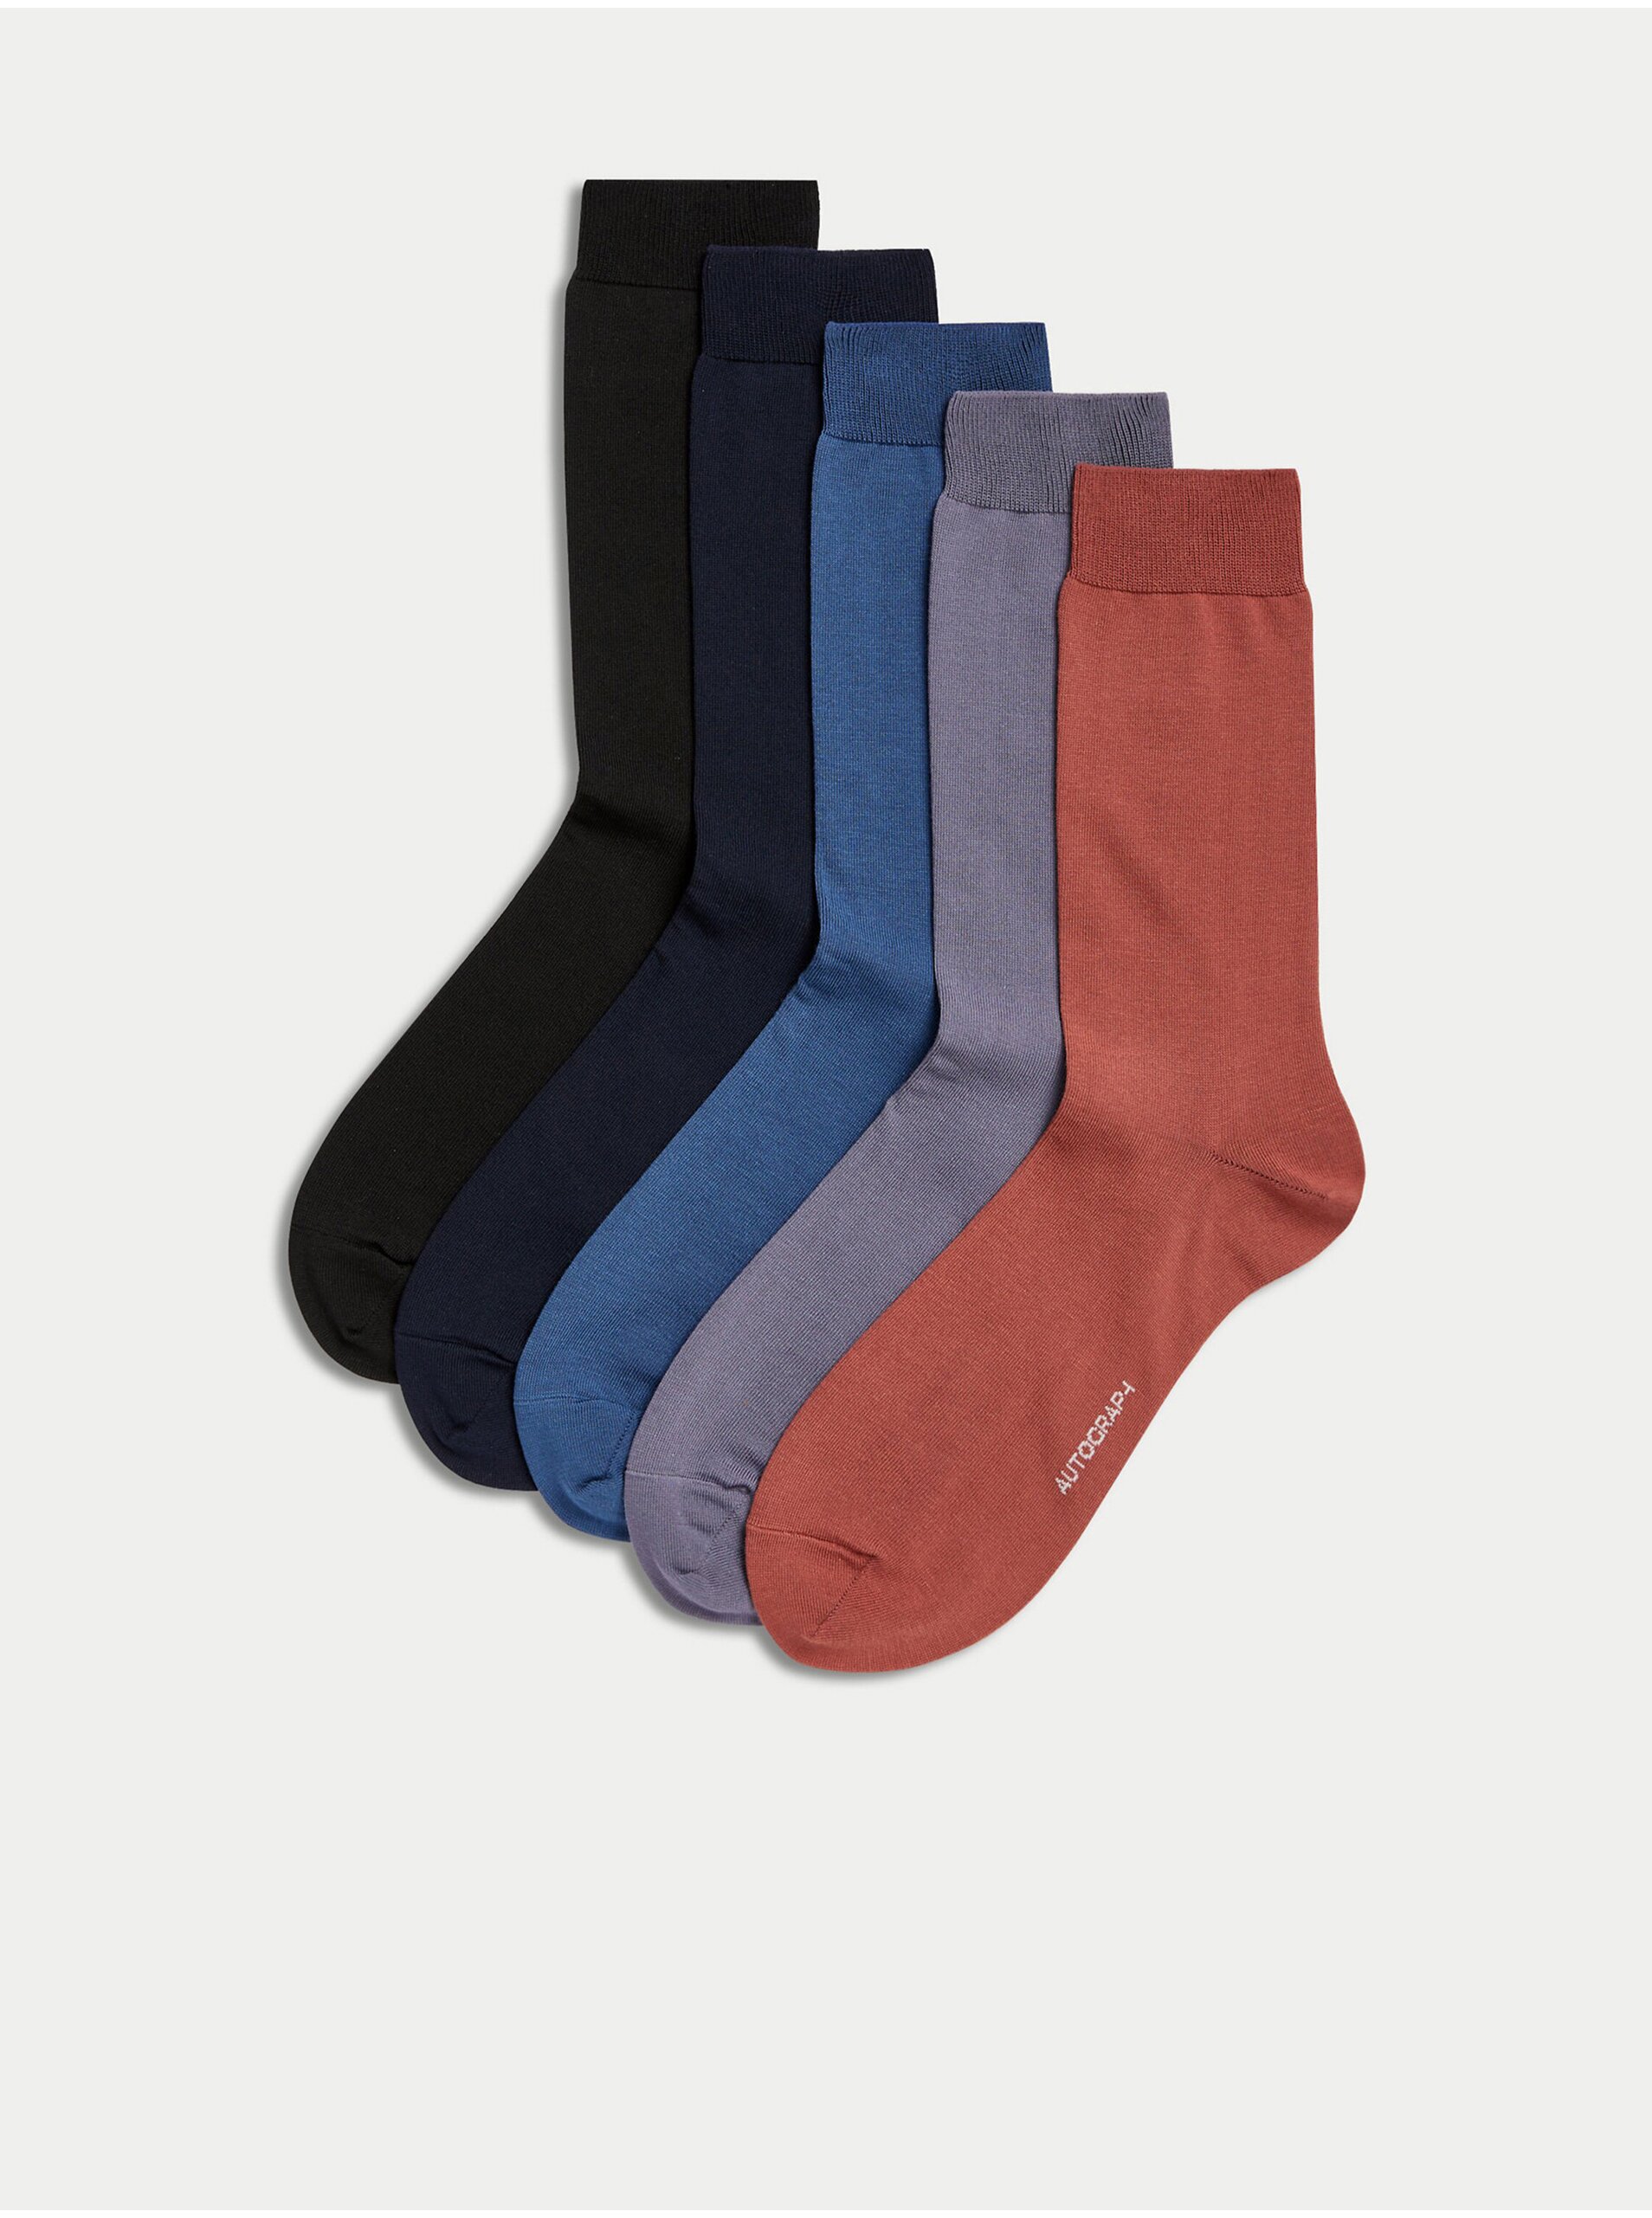 Lacno Súprava piatich párov pánskych ponožiek v čiernej, modrej a červenej farbe Marks & Spencer Pima